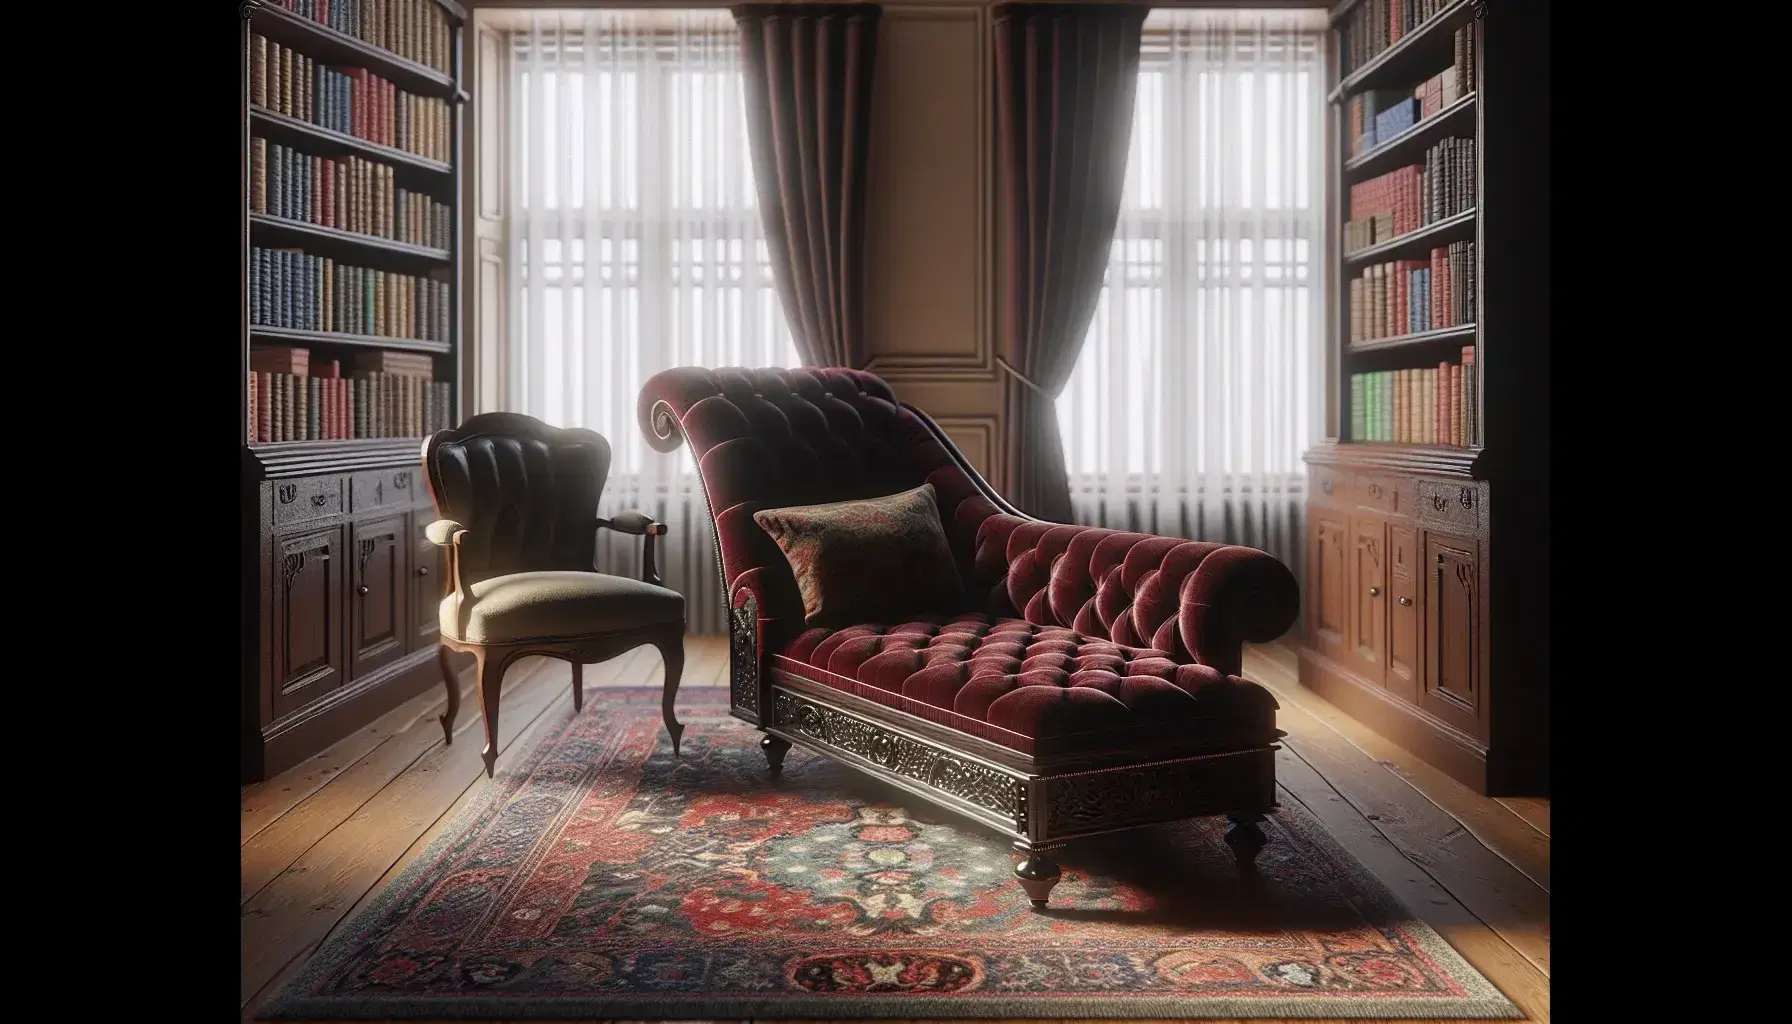 Diván terapéutico estilo victoriano en terciopelo rojo oscuro con patas de madera tallada, junto a silla clásica y alfombra persa en habitación iluminada con estantería de libros.